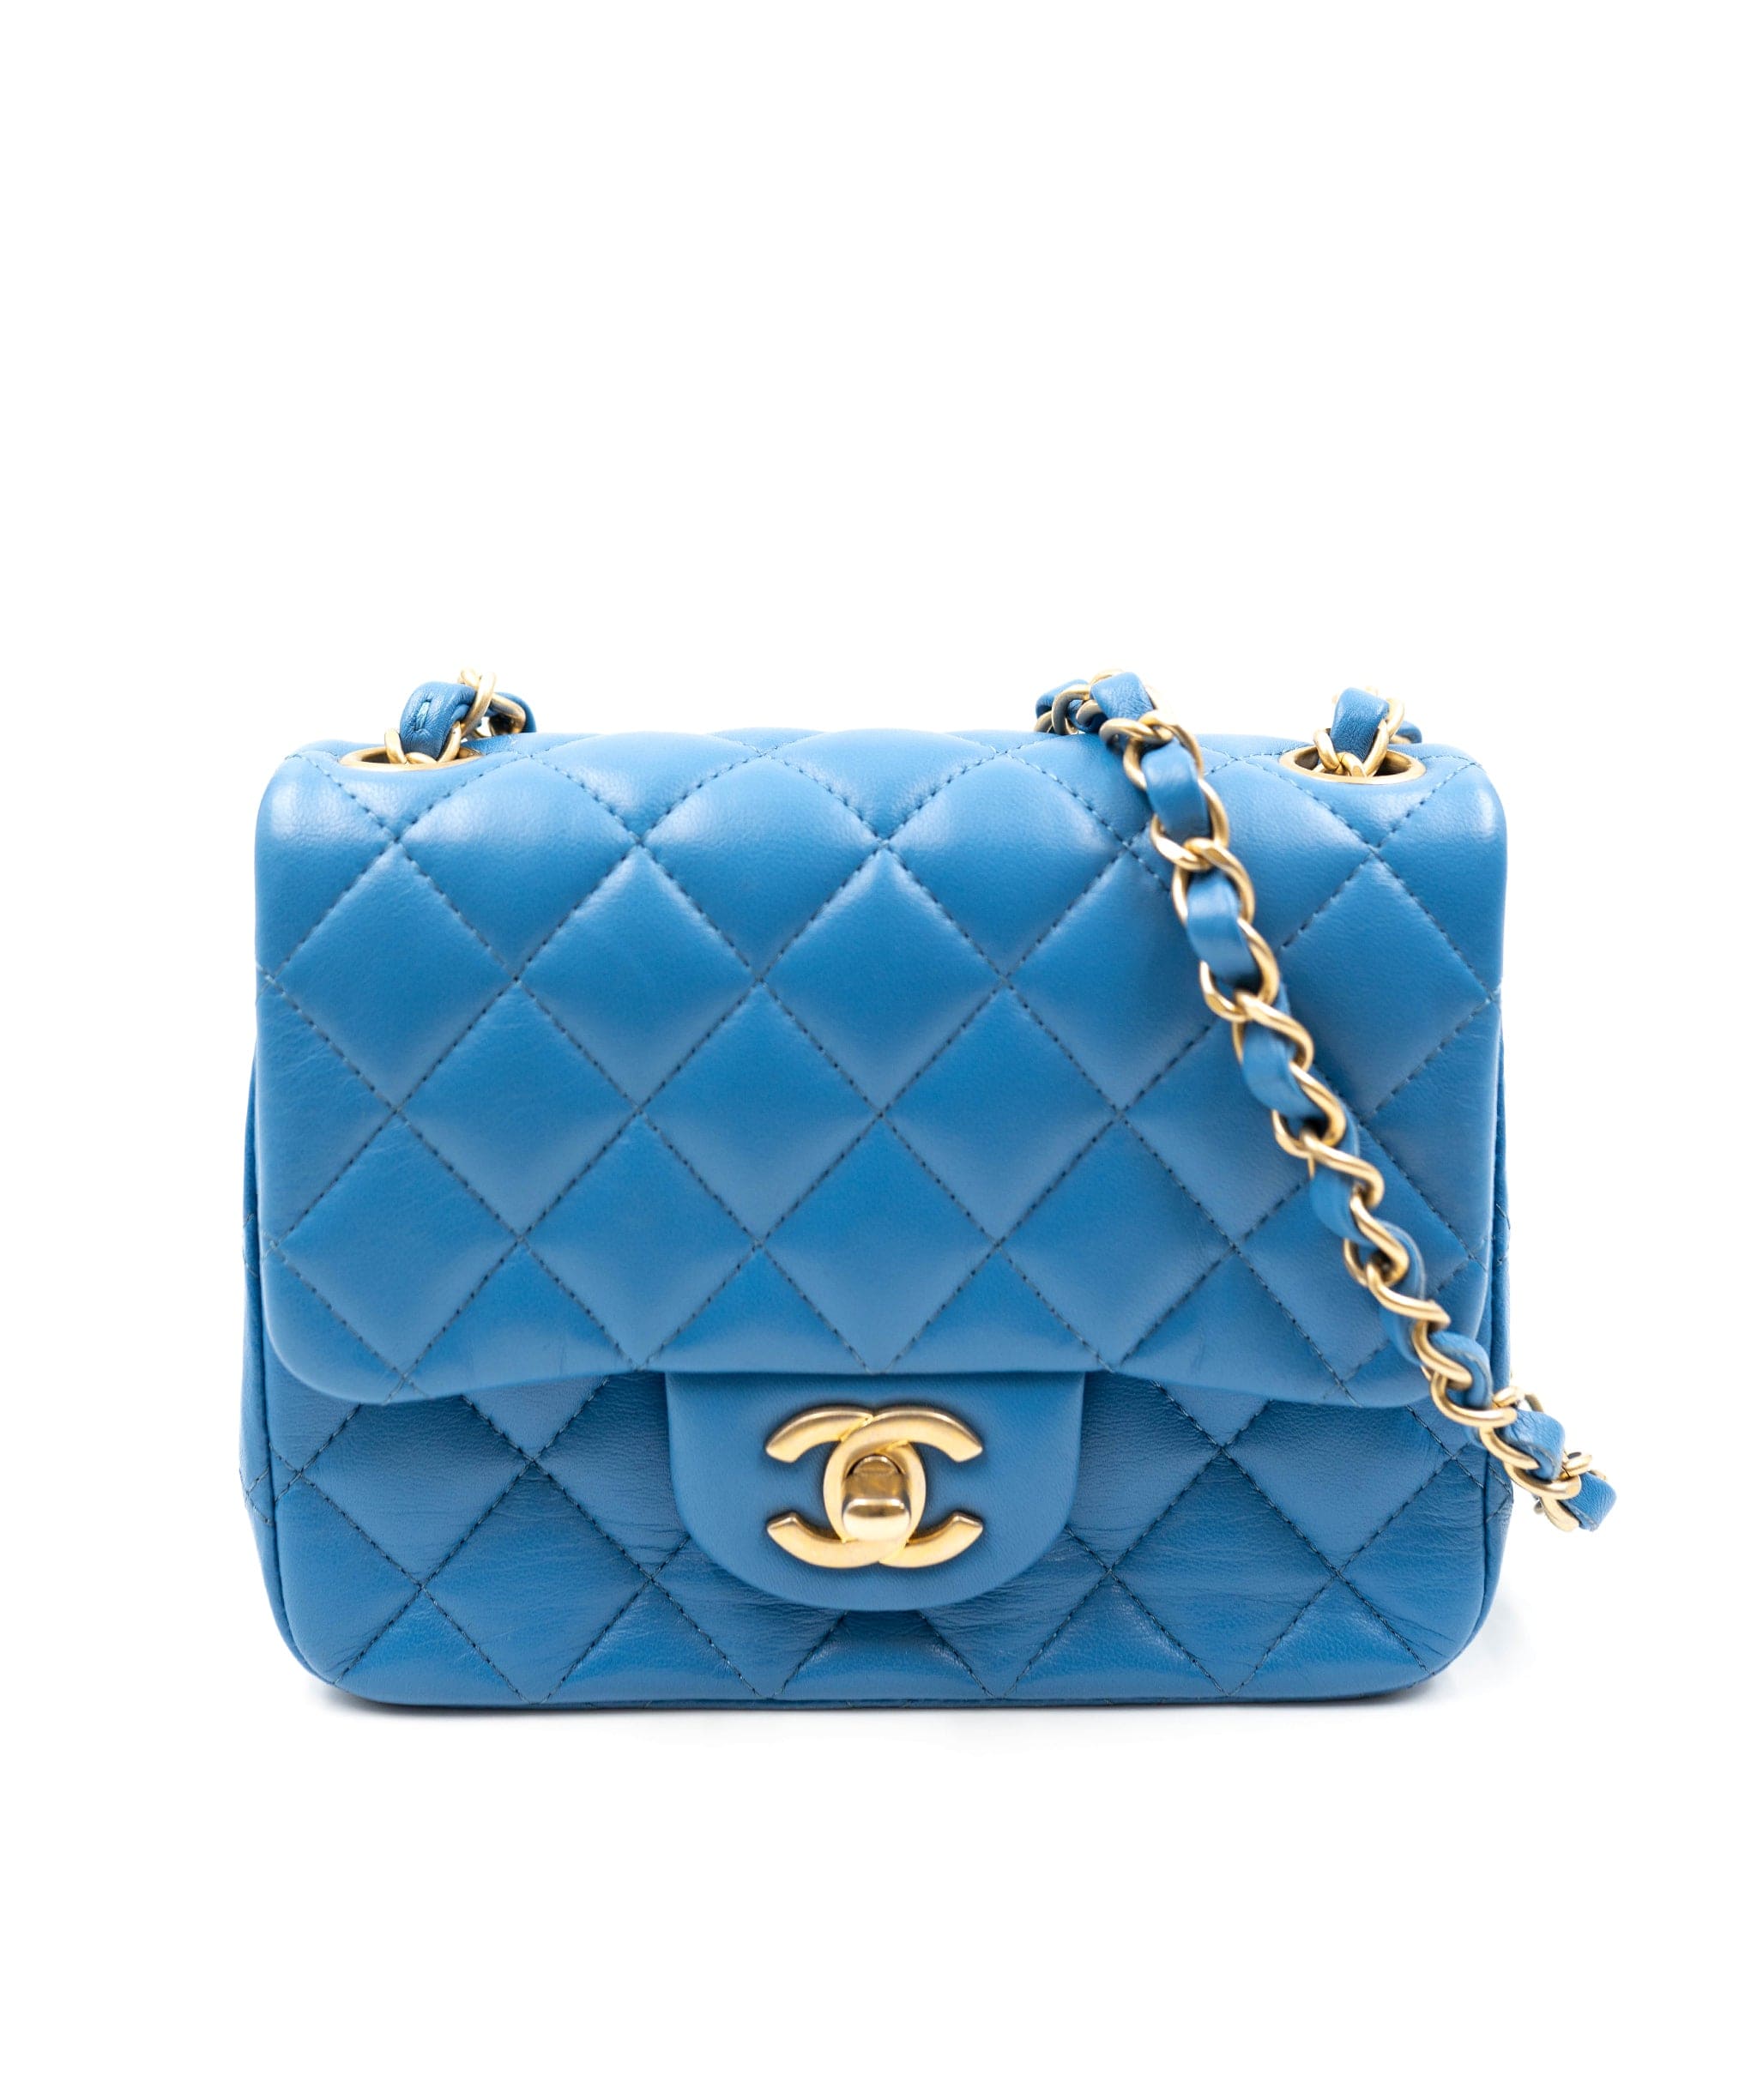 light blue chanel handbag